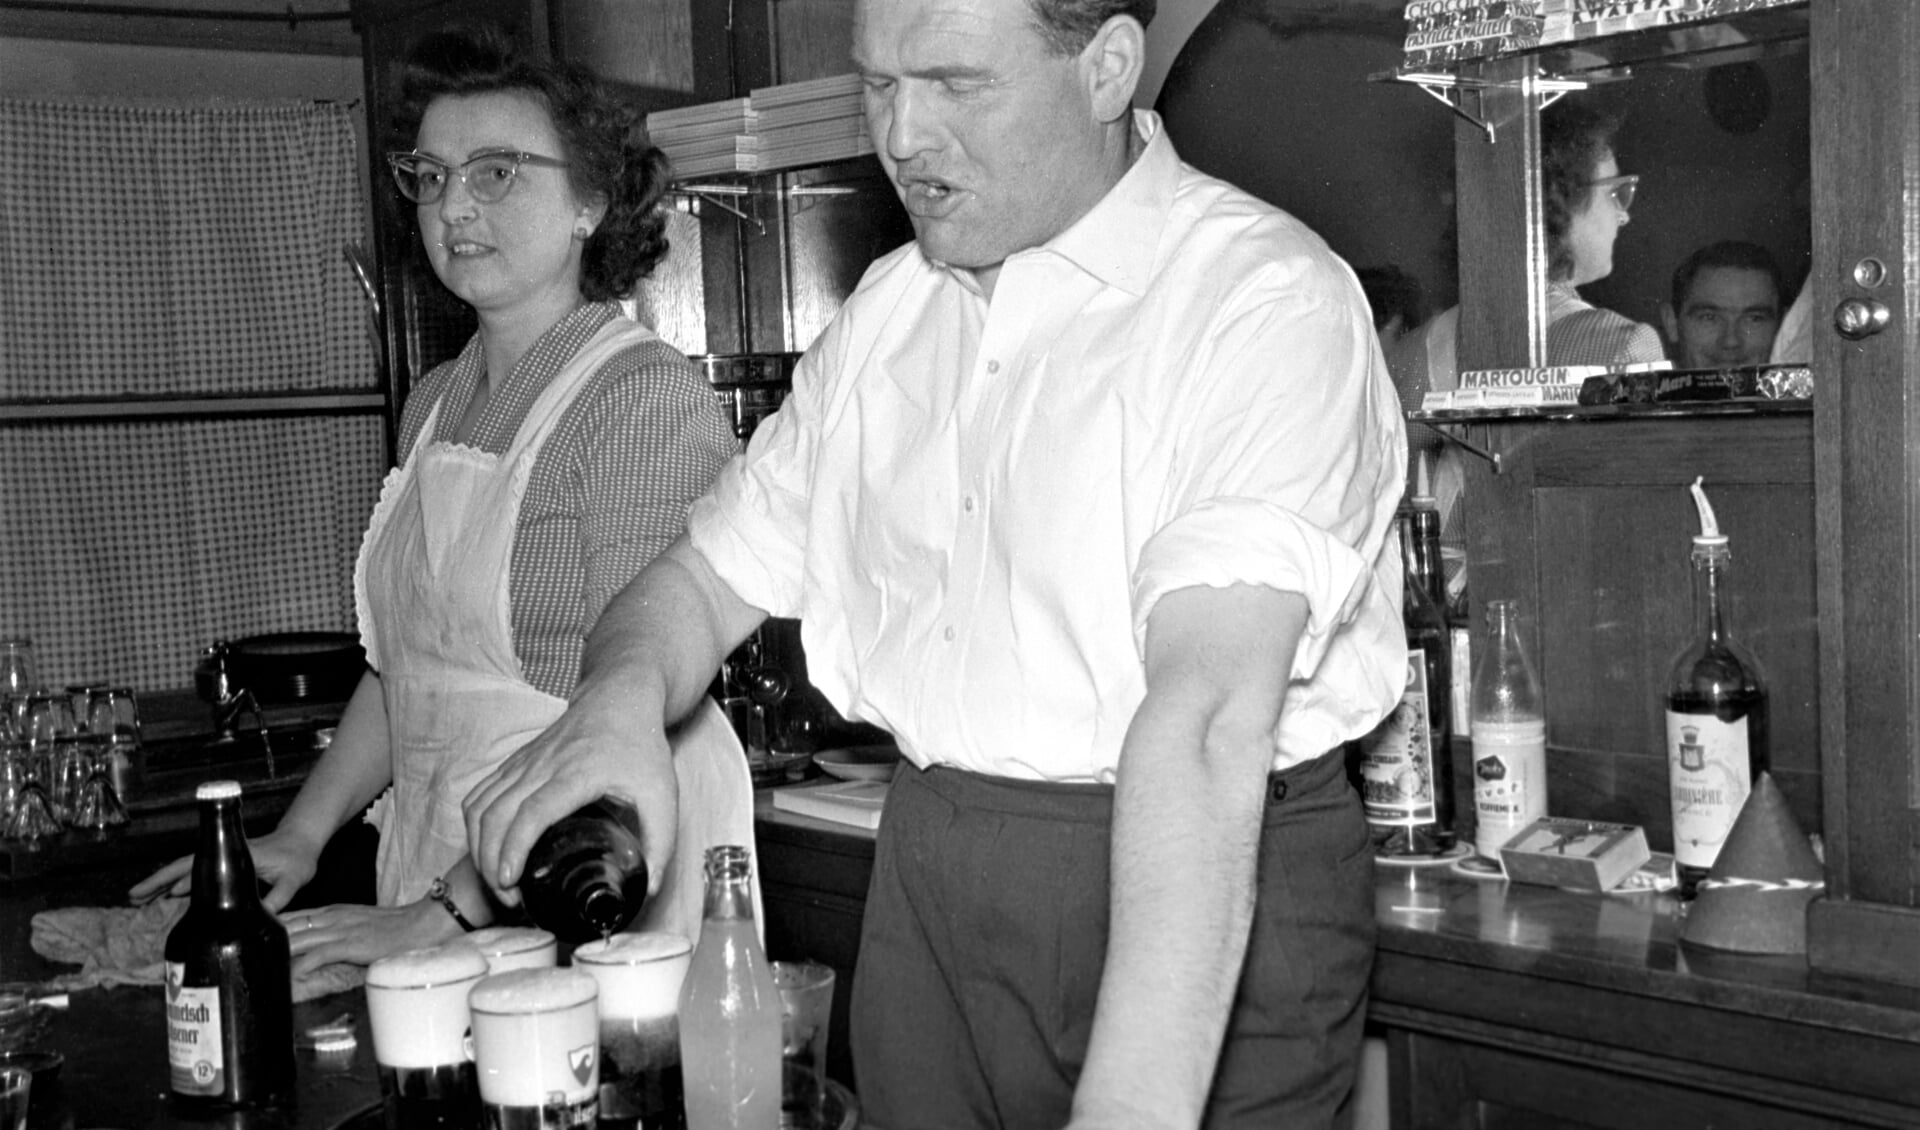 De Kèrel met zijn vrouw in zijn café De Fordwereld, bierbottelaar en handelaar, maar verder terug had het geslacht Van Hassel het beroep van brouwer.